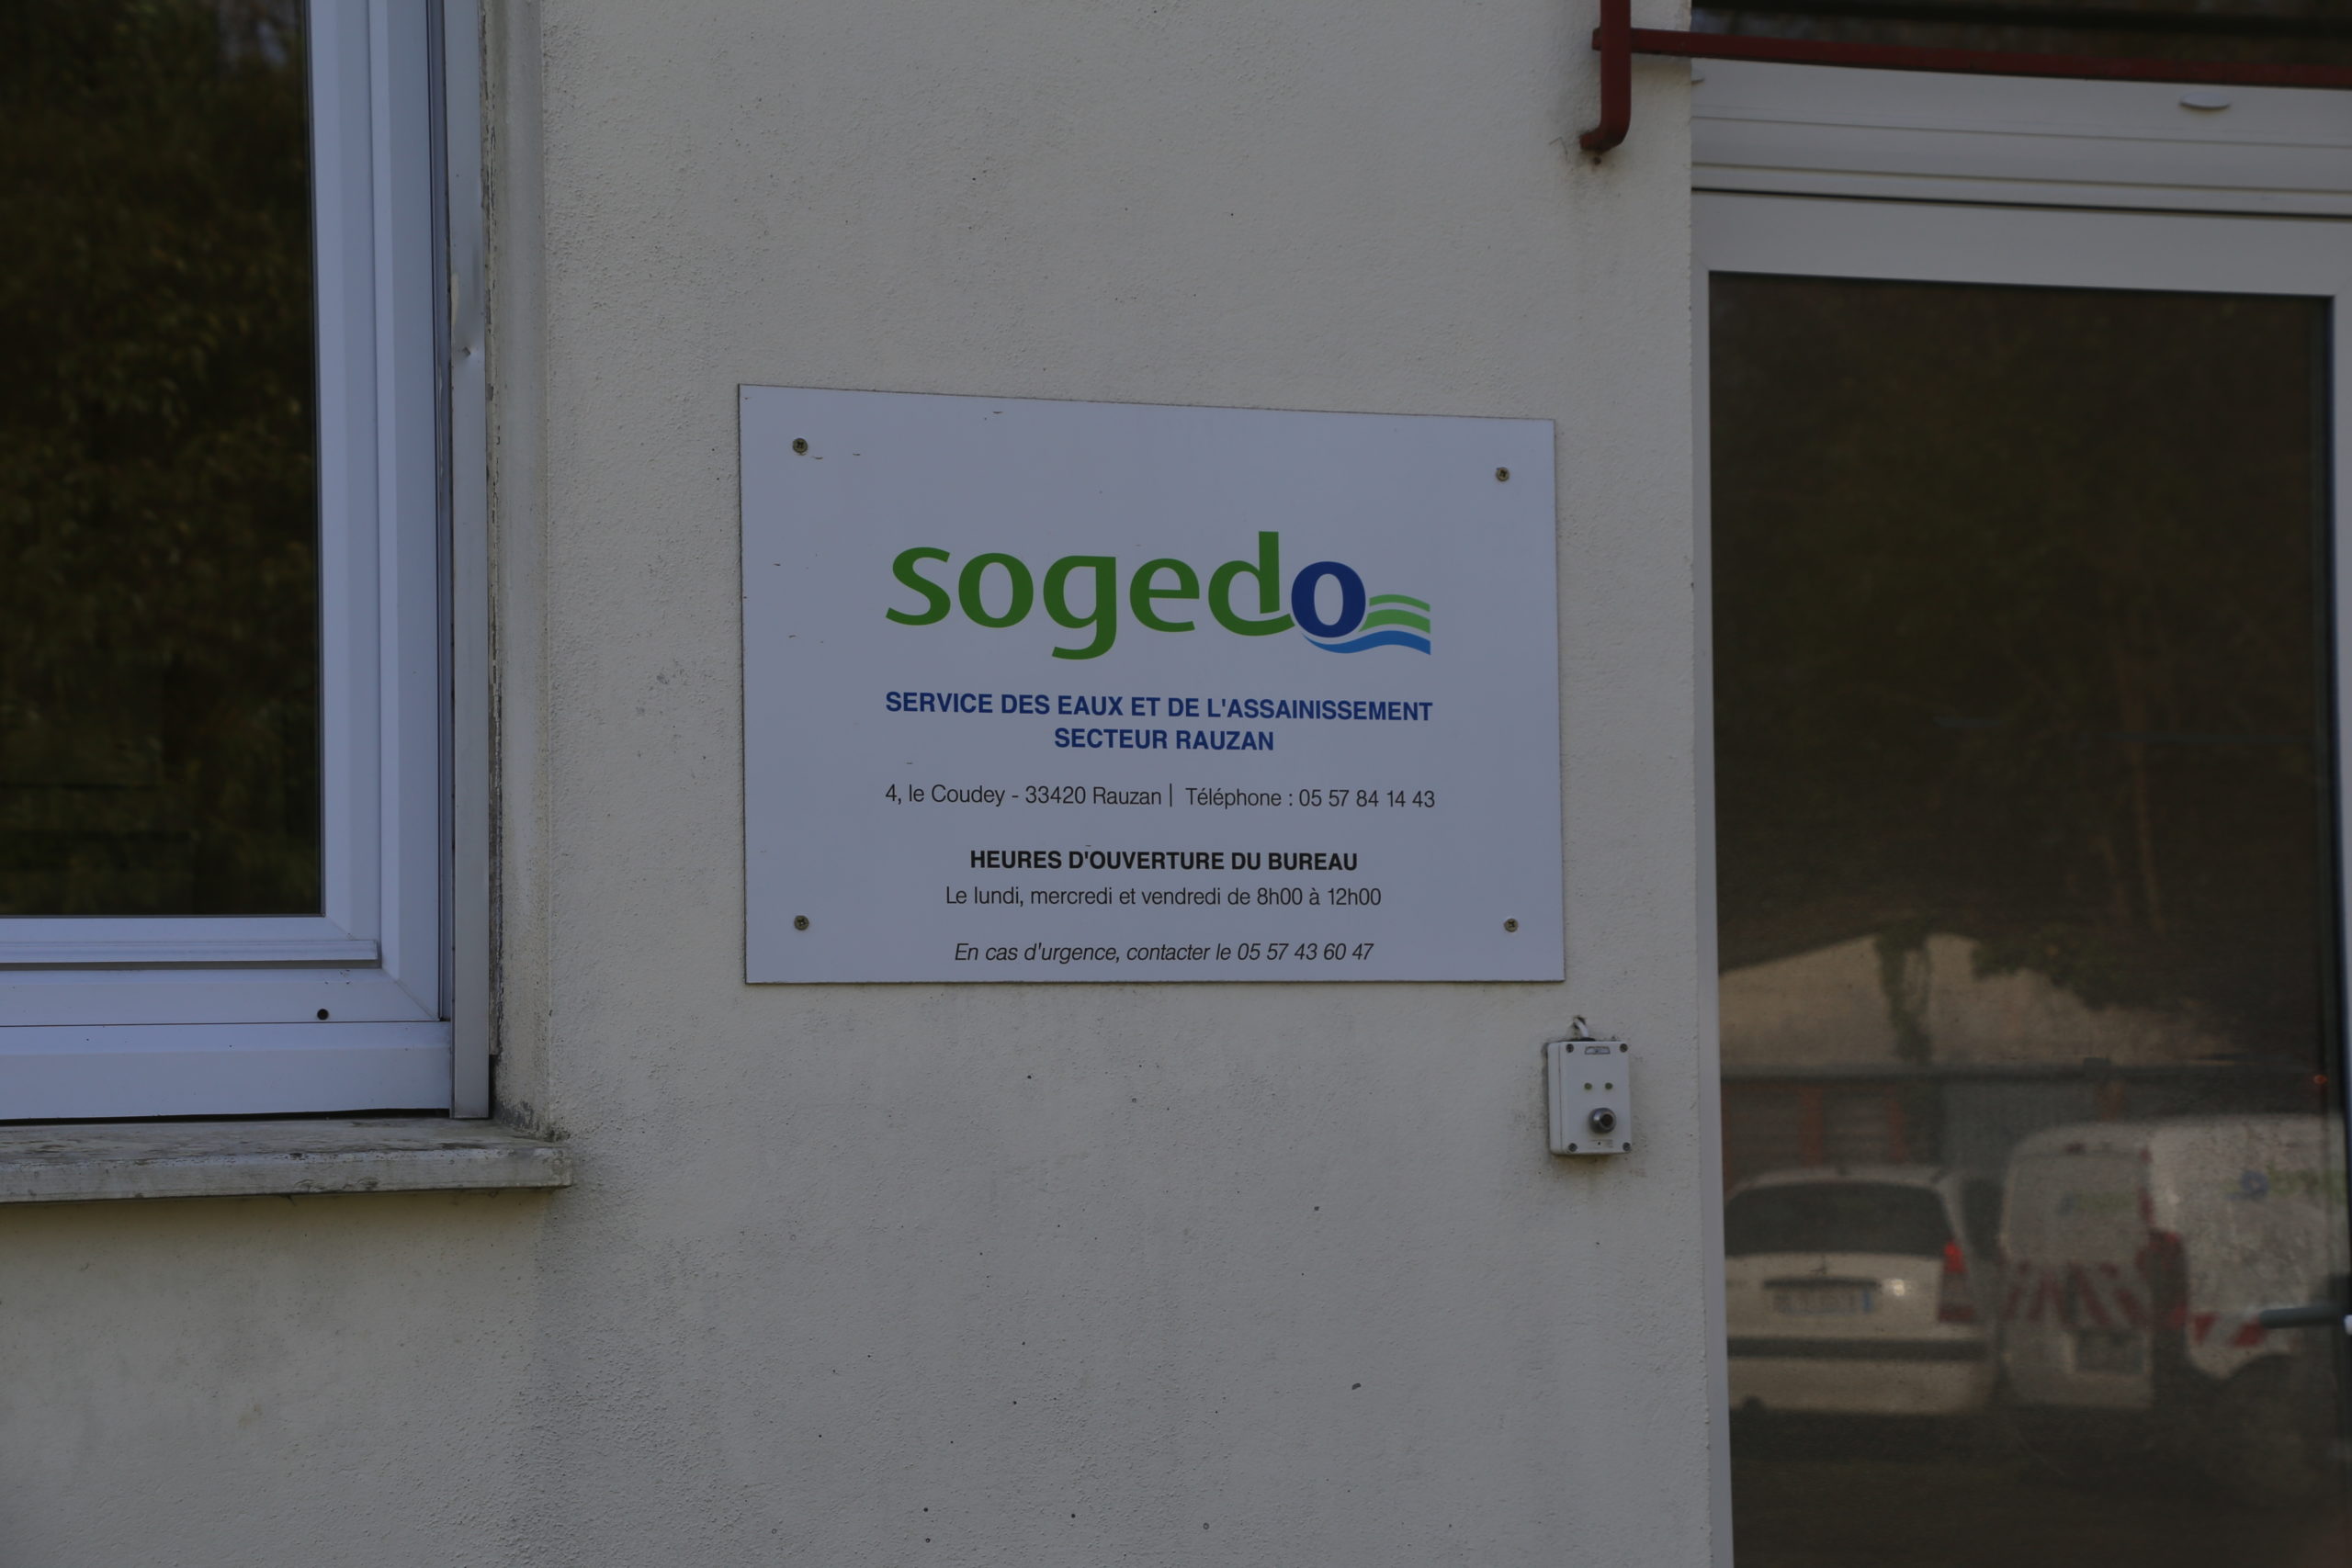 Agence Sogedo de Rauzan (Gironde) : les travaux avancent dans d’excellentes conditions